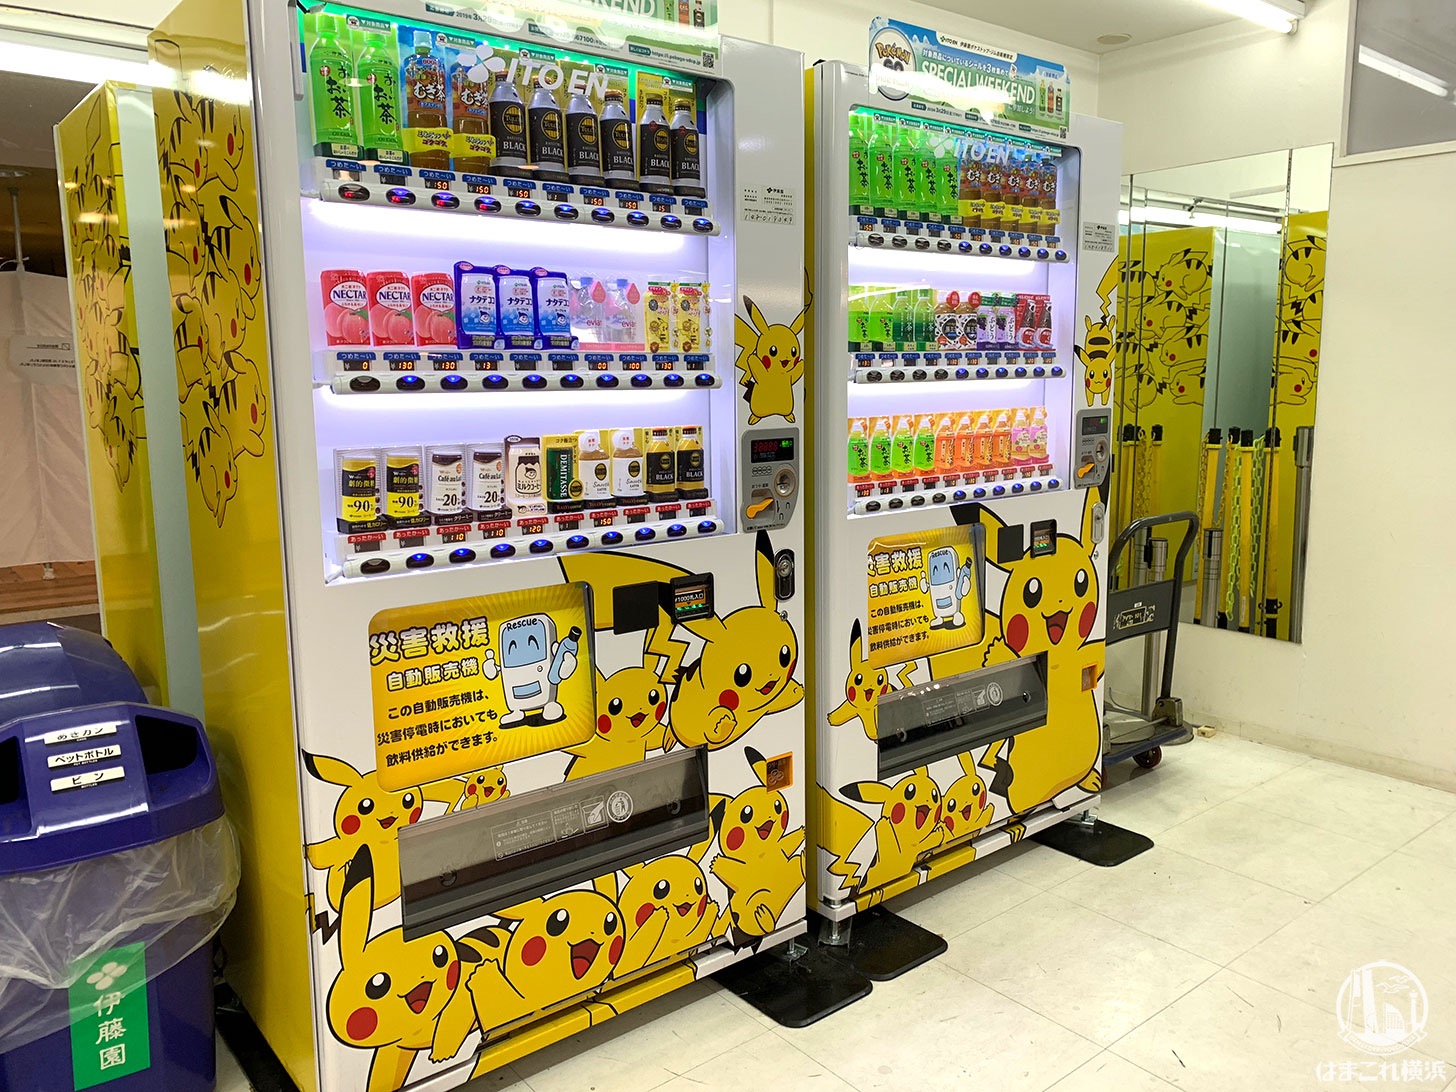 ポケモンGO 伊藤園自販機マップ見て横浜でゲット！みなとみらい・関内・横浜中華街